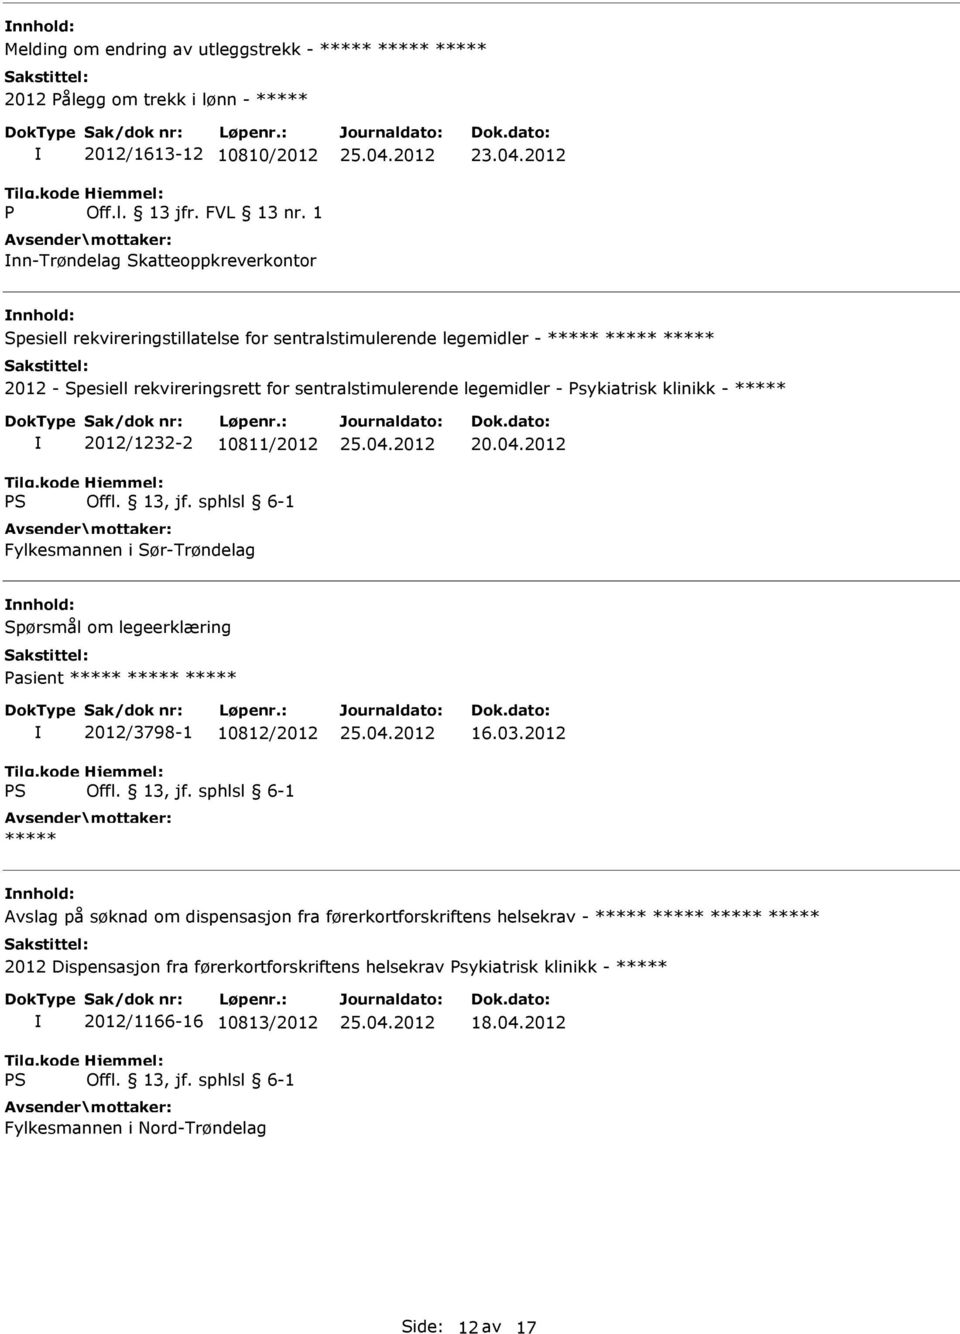 sentralstimulerende legemidler - Psykiatrisk klinikk - 2012/1232-2 10811/2012 Fylkesmannen i Sør-Trøndelag Spørsmål om legeerklæring Pasient 2012/3798-1